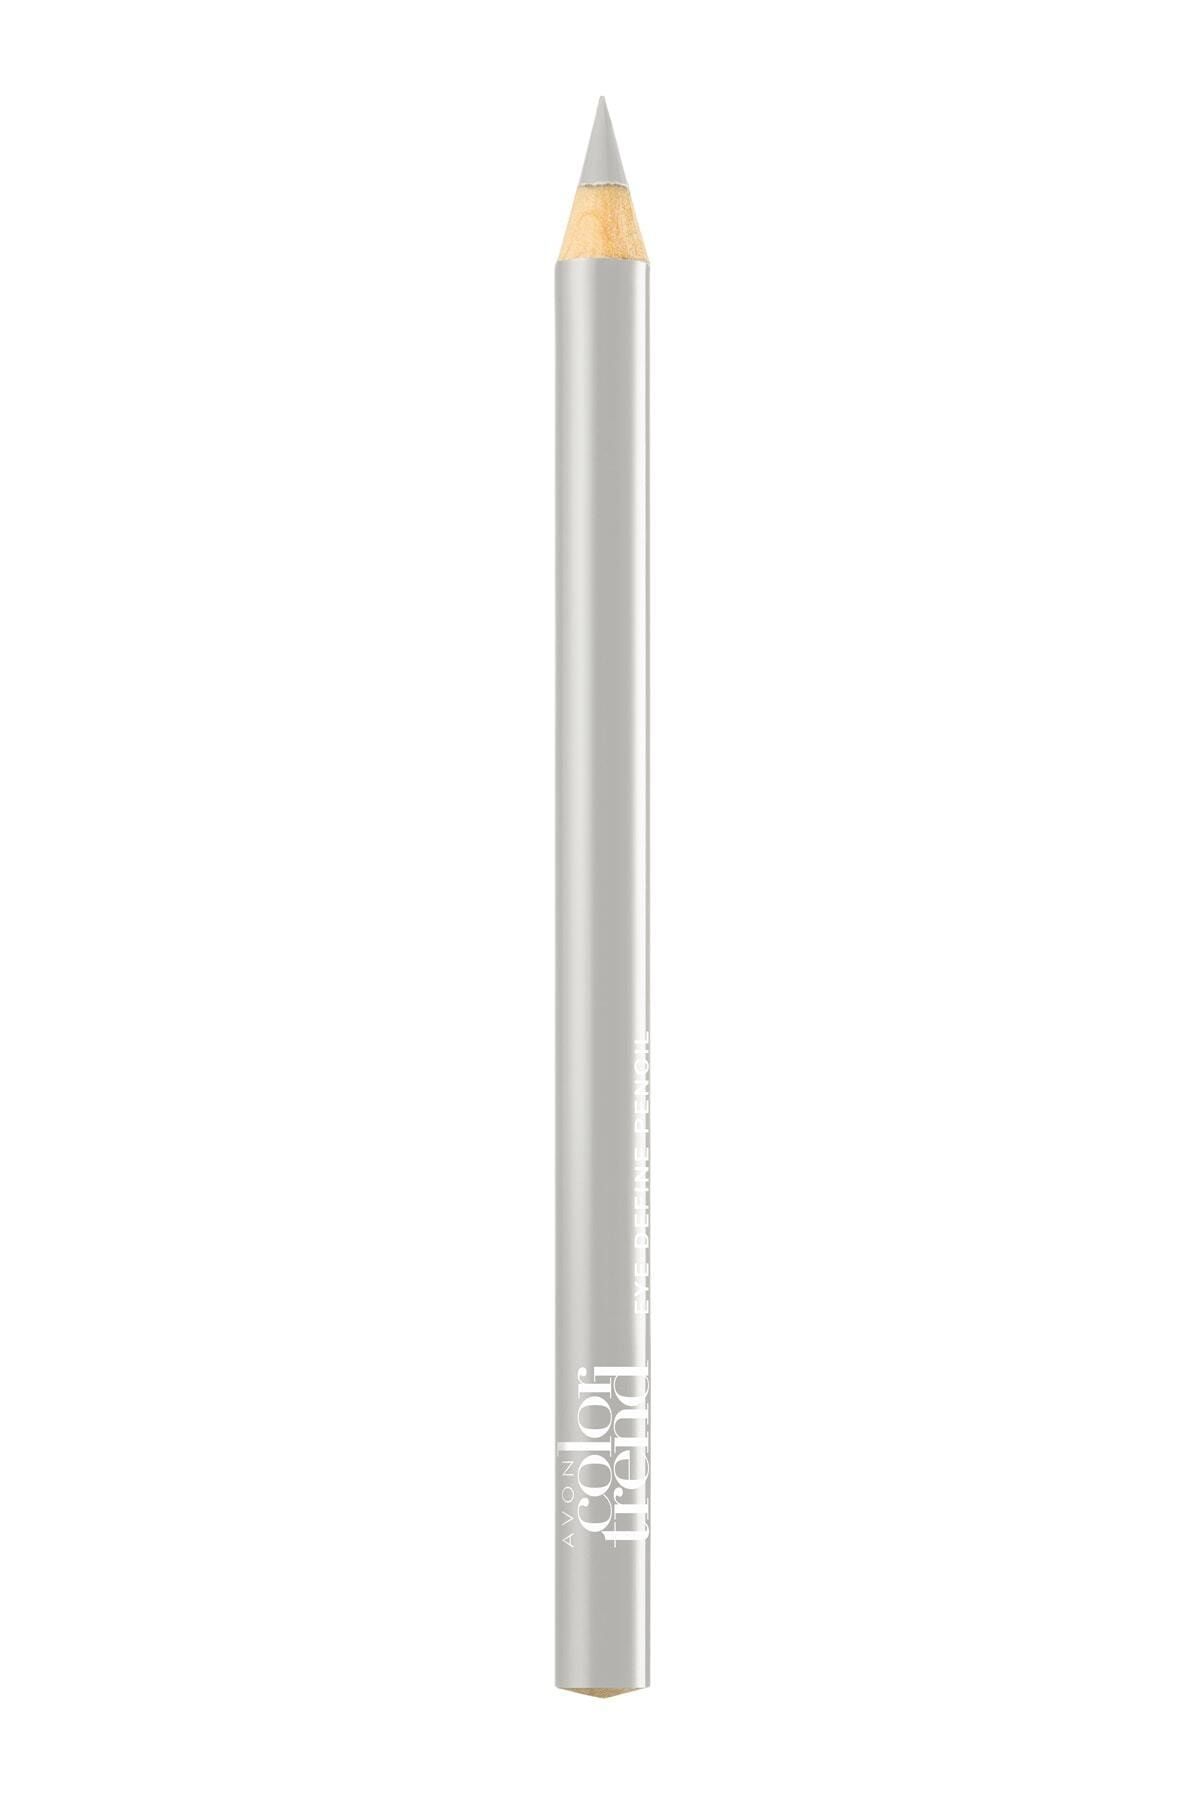 Avon Color Trend Gümüş Renk Göz Kalemi - Silver 8681298935186